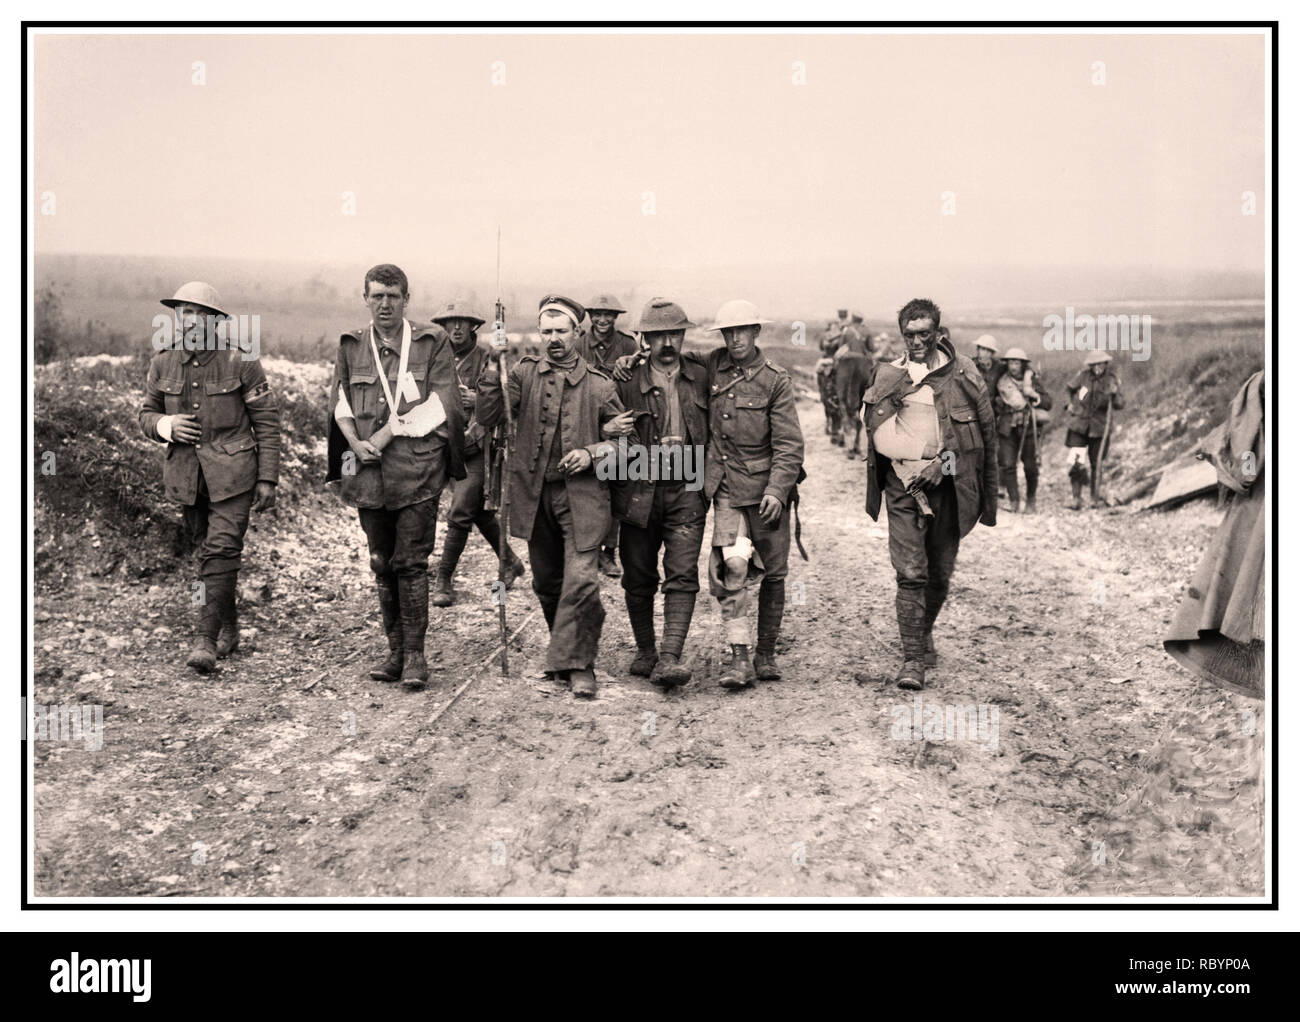 WW1 Bataille de la somme de l'image d'archive d'un prisonnier allemand blessé britannique aidant à faire leur chemin à un poste de secours à proximité de bois Bernafay suite de combats sur la crête de Bazentin, 19 juillet 1916, au cours de la bataille de la Somme. Cinq britanniques et allemandes, quelques blessés, des blessés au moyen d'un poste de secours près de Bernafay France Banque D'Images